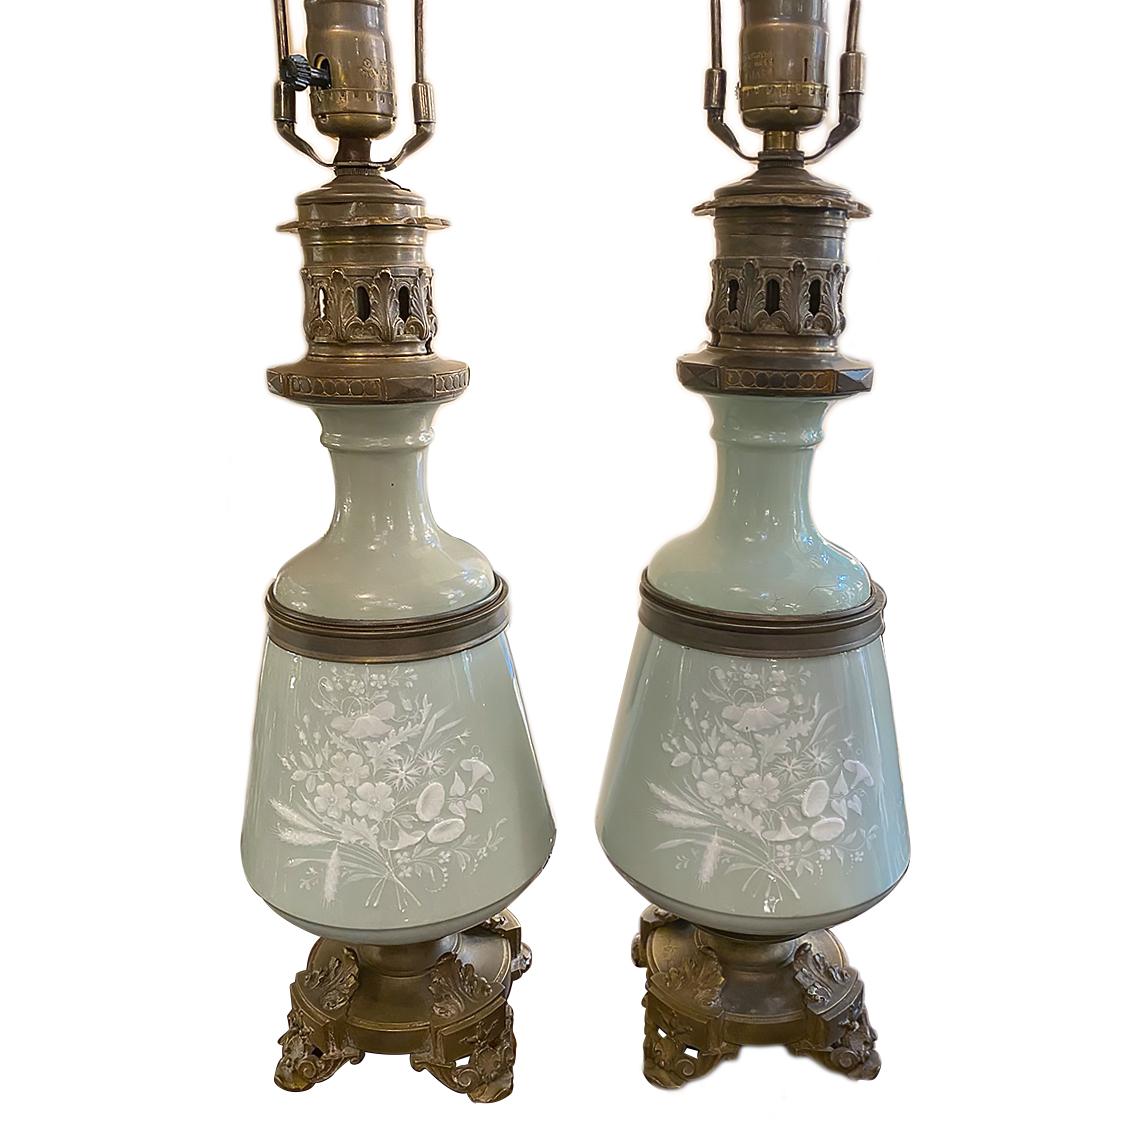 Coppia di lampade da tavolo francesi di fine secolo in celadon con decorazioni floreali, basi e accessori in bronzo.

Misure:
Altezza del corpo: 17,5
Altezza fino al resto del paralume: 28